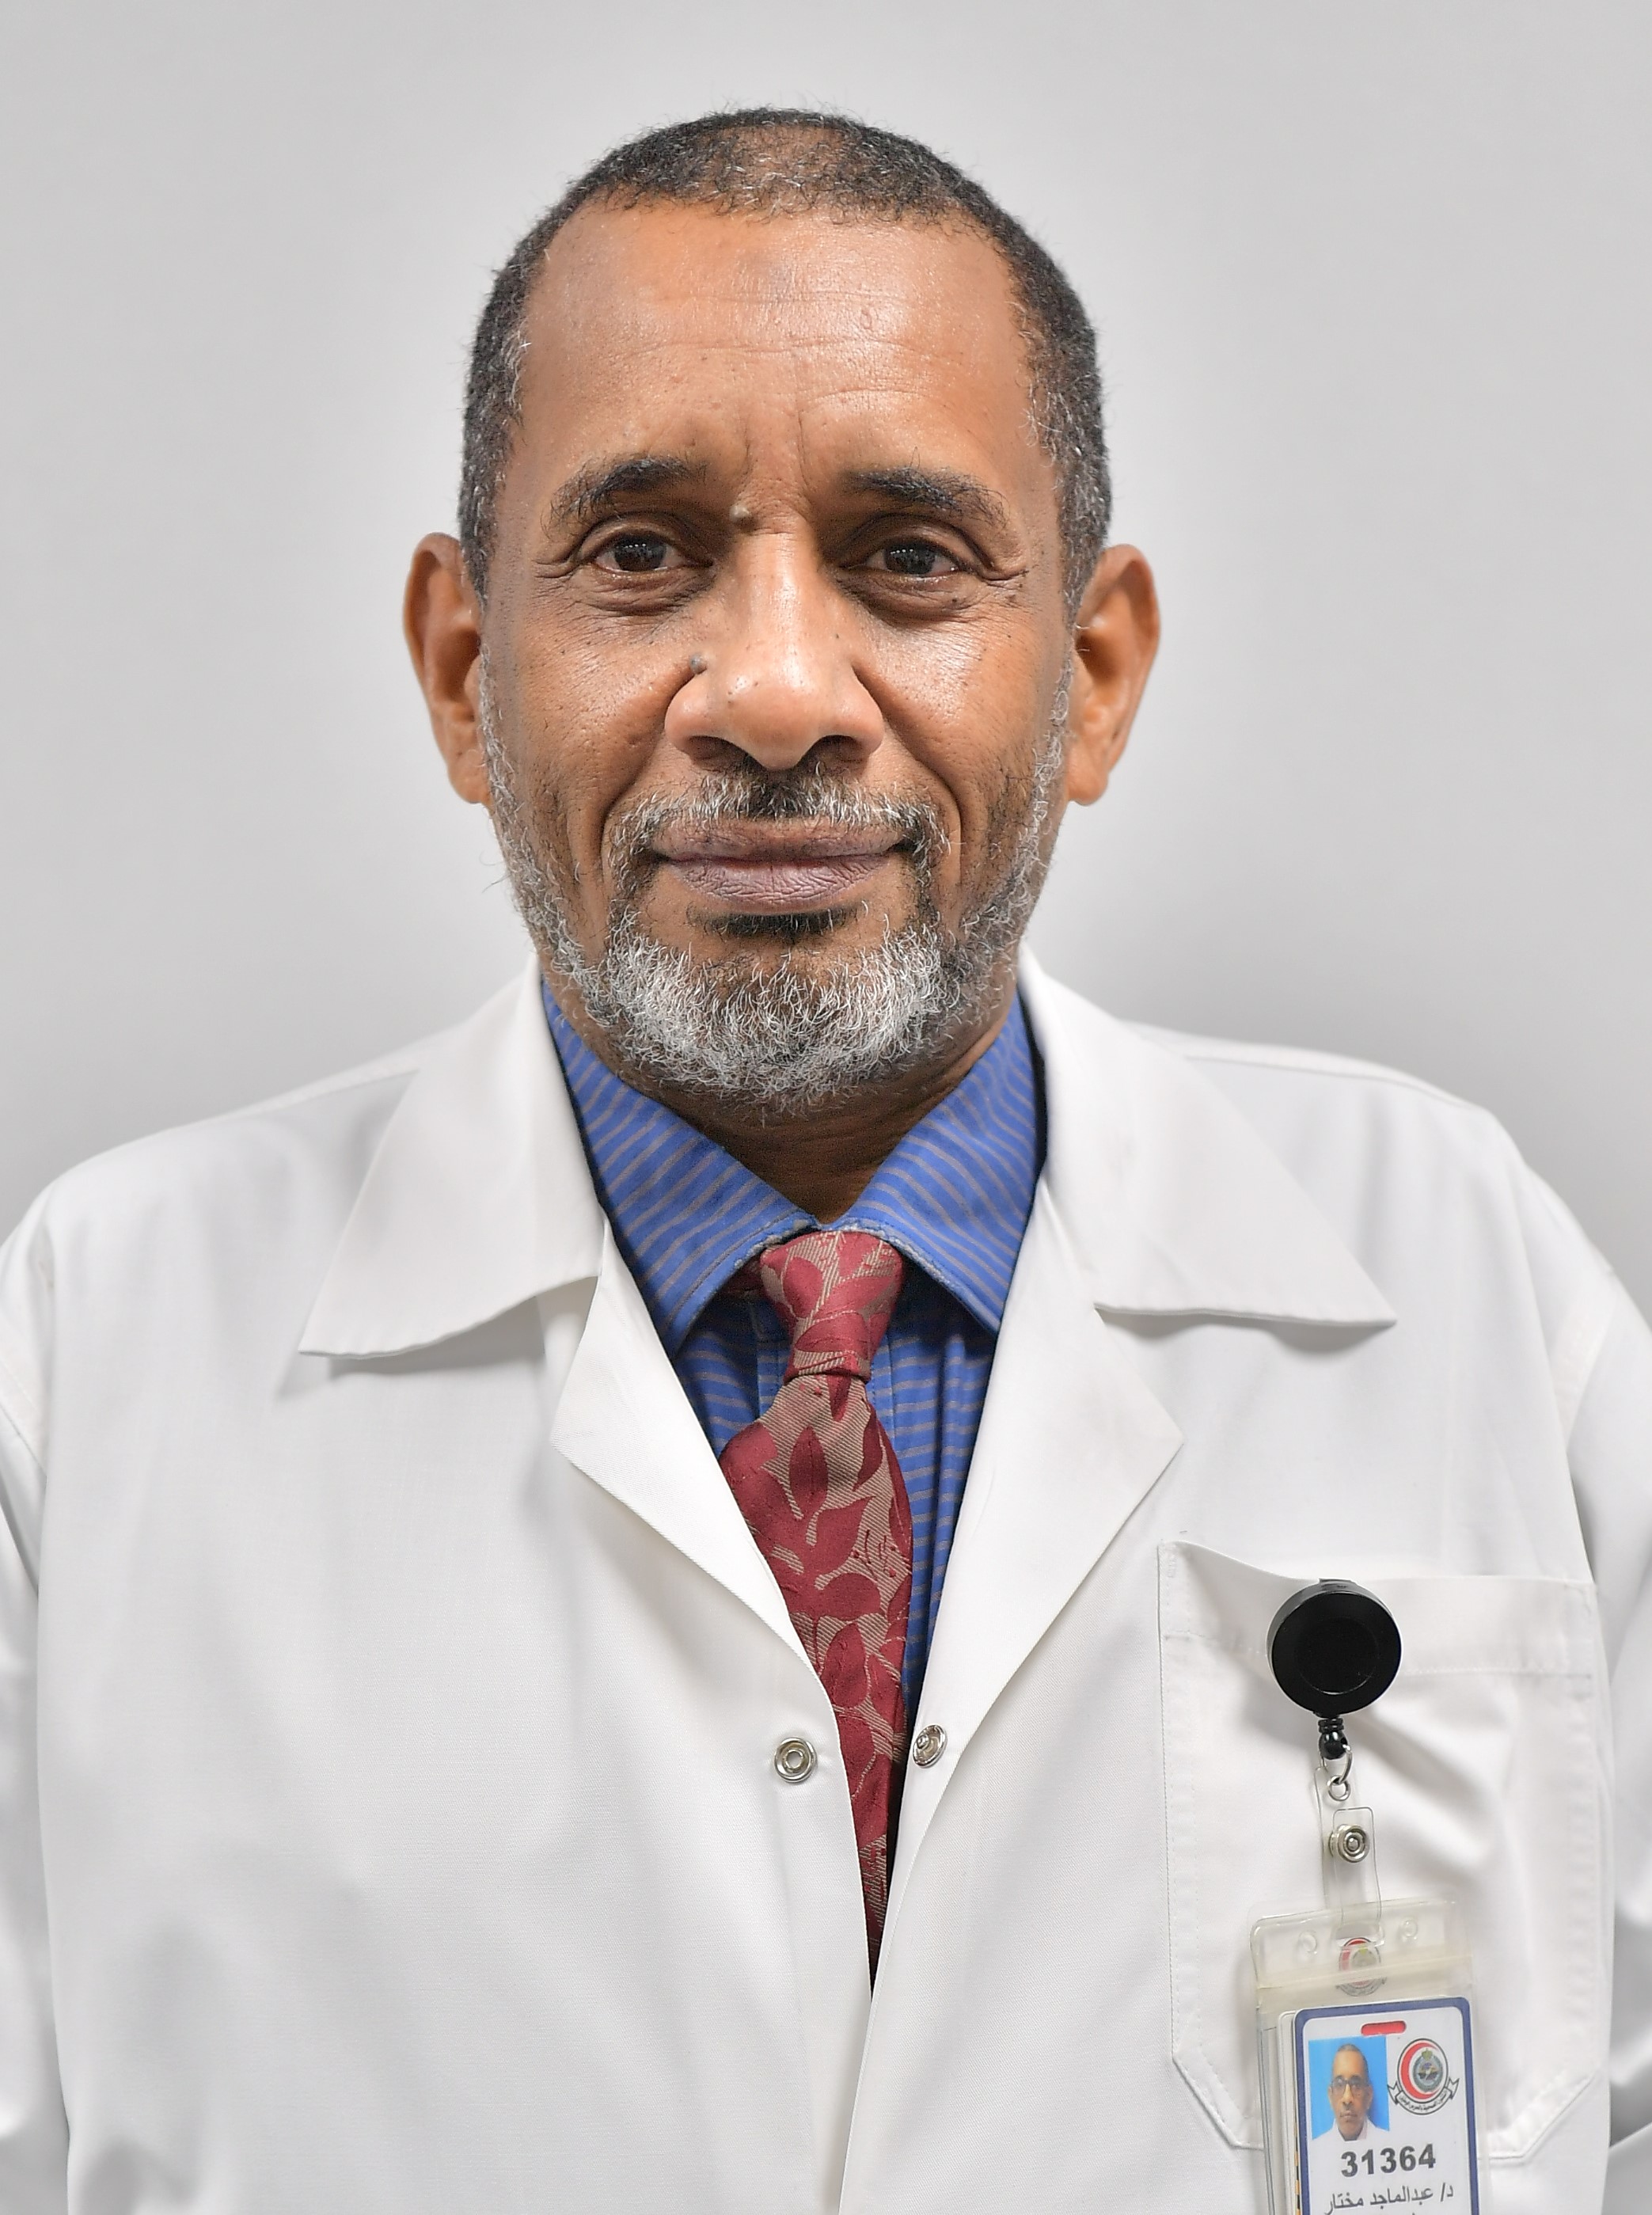 Dr. Abdelmagid Mukhtar